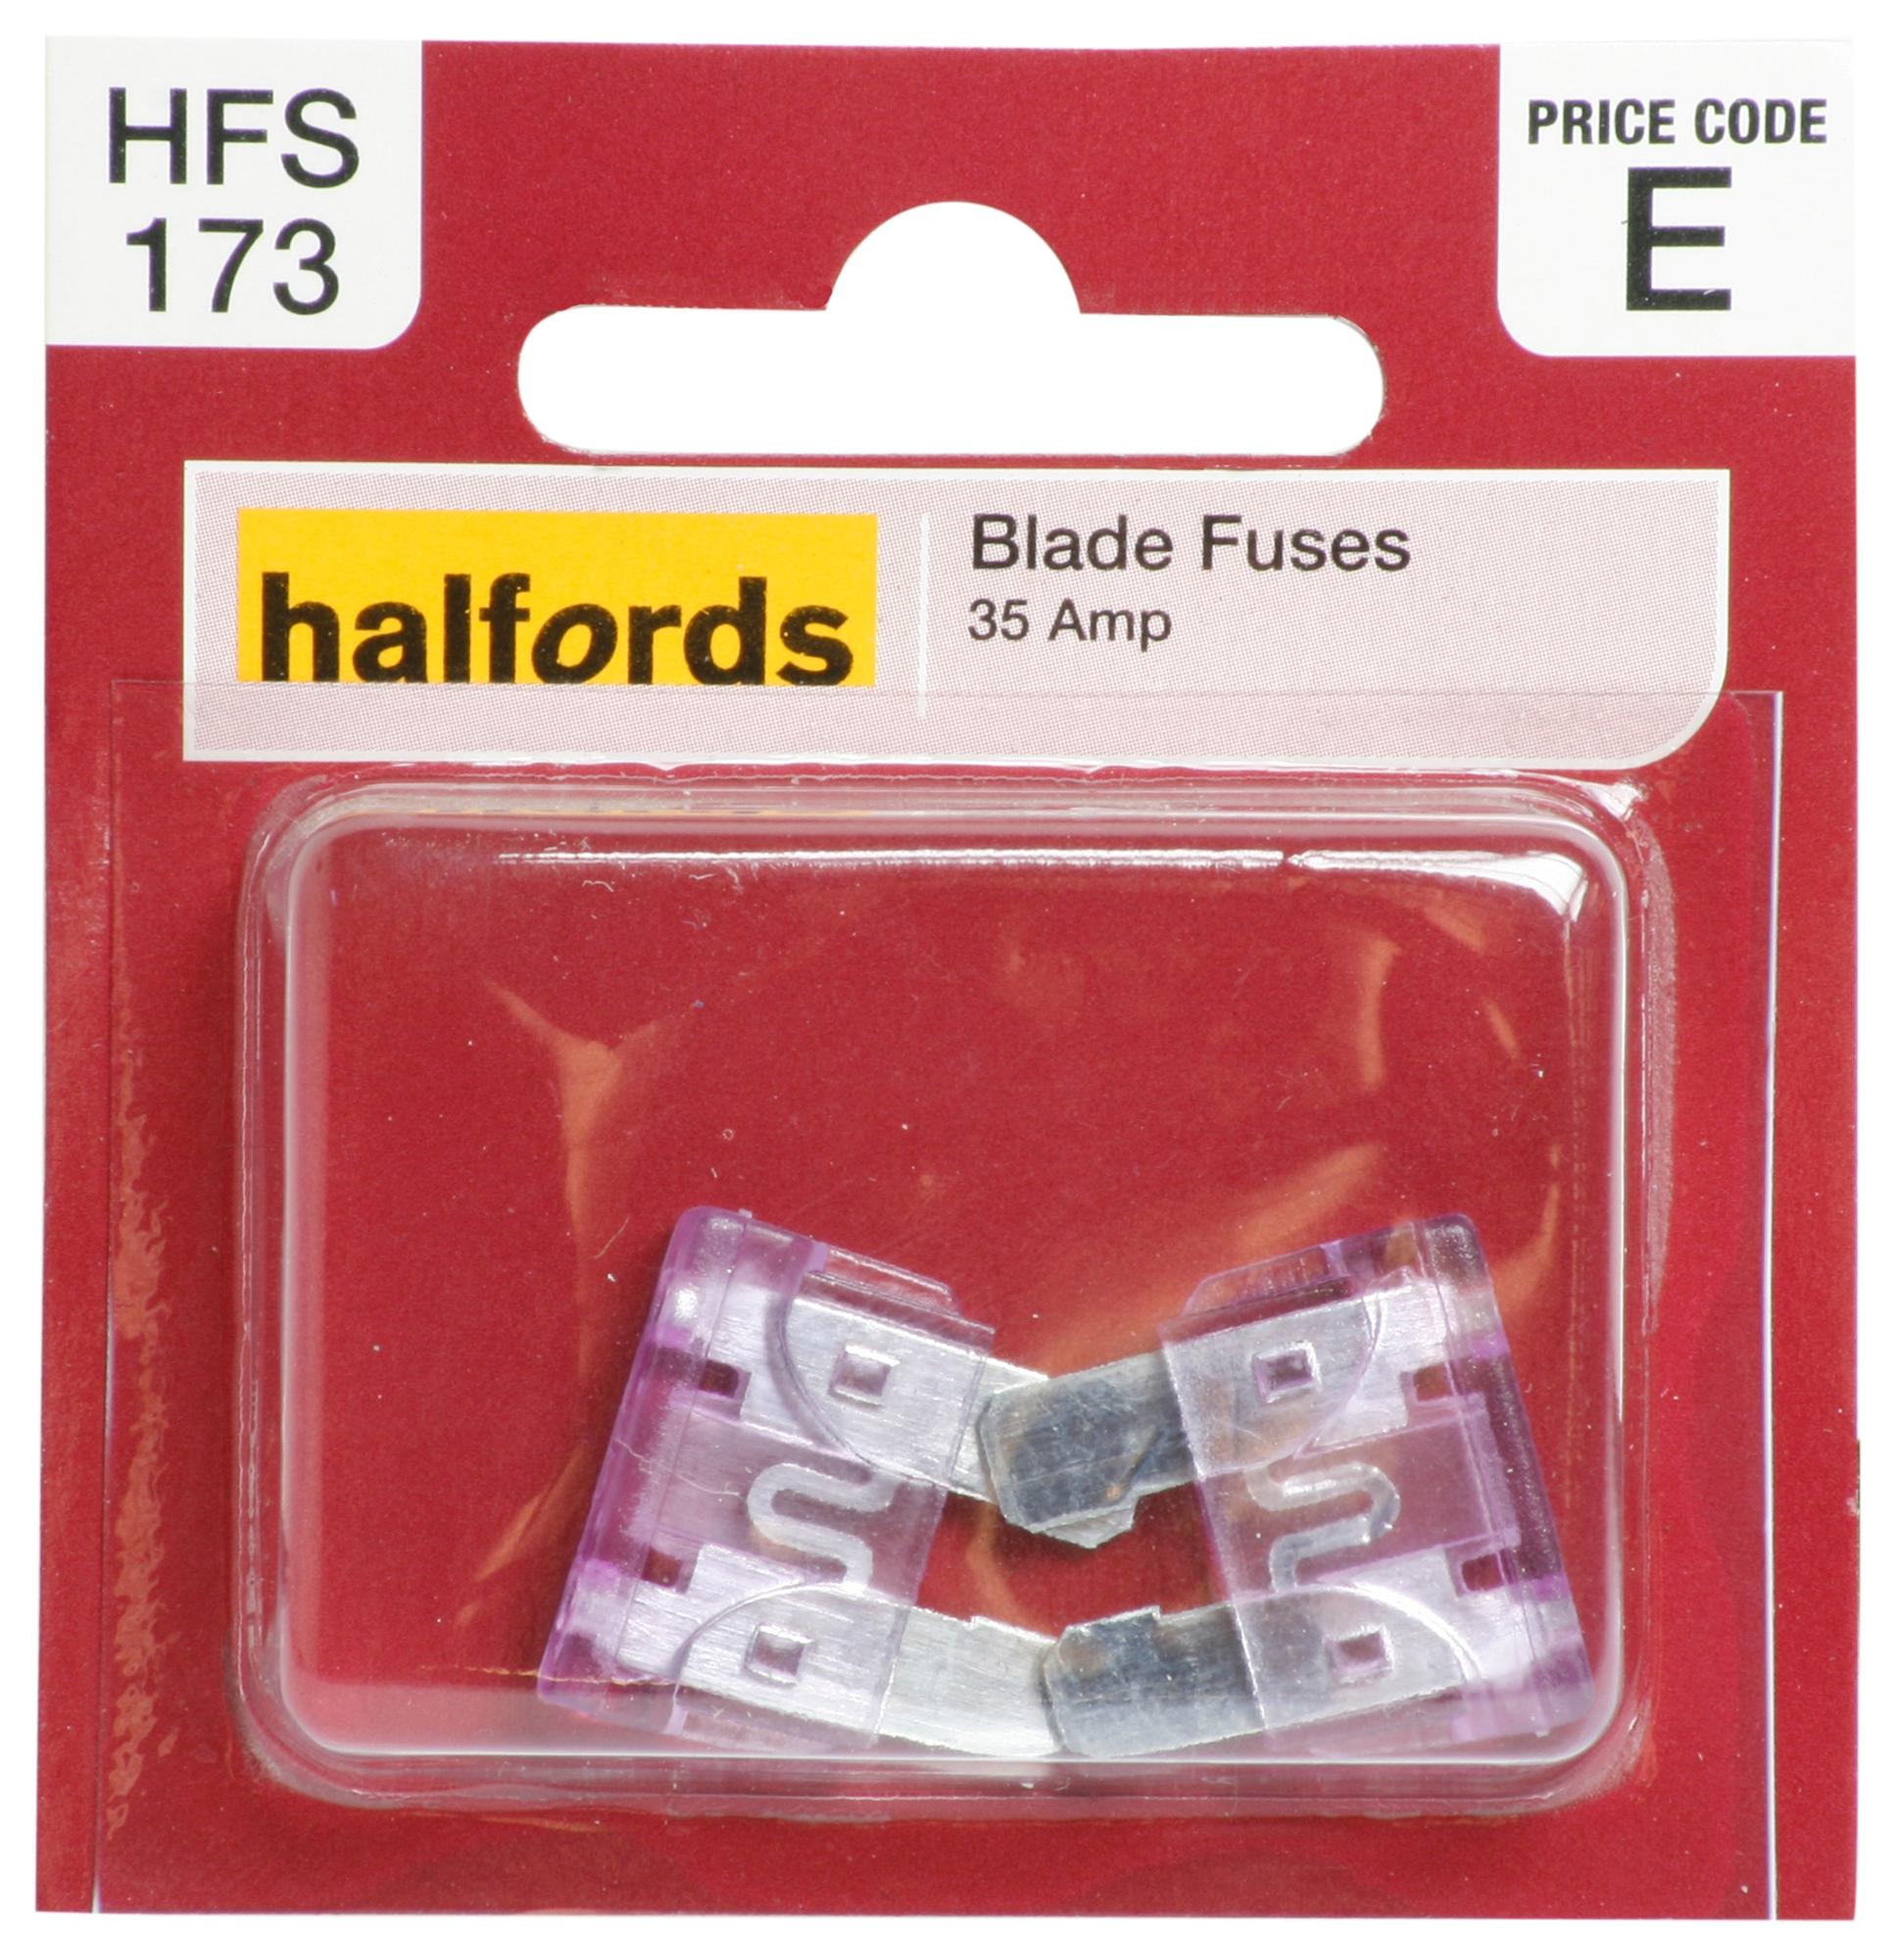 Halfords Blade Fuses 35 Amp (Hfs173)